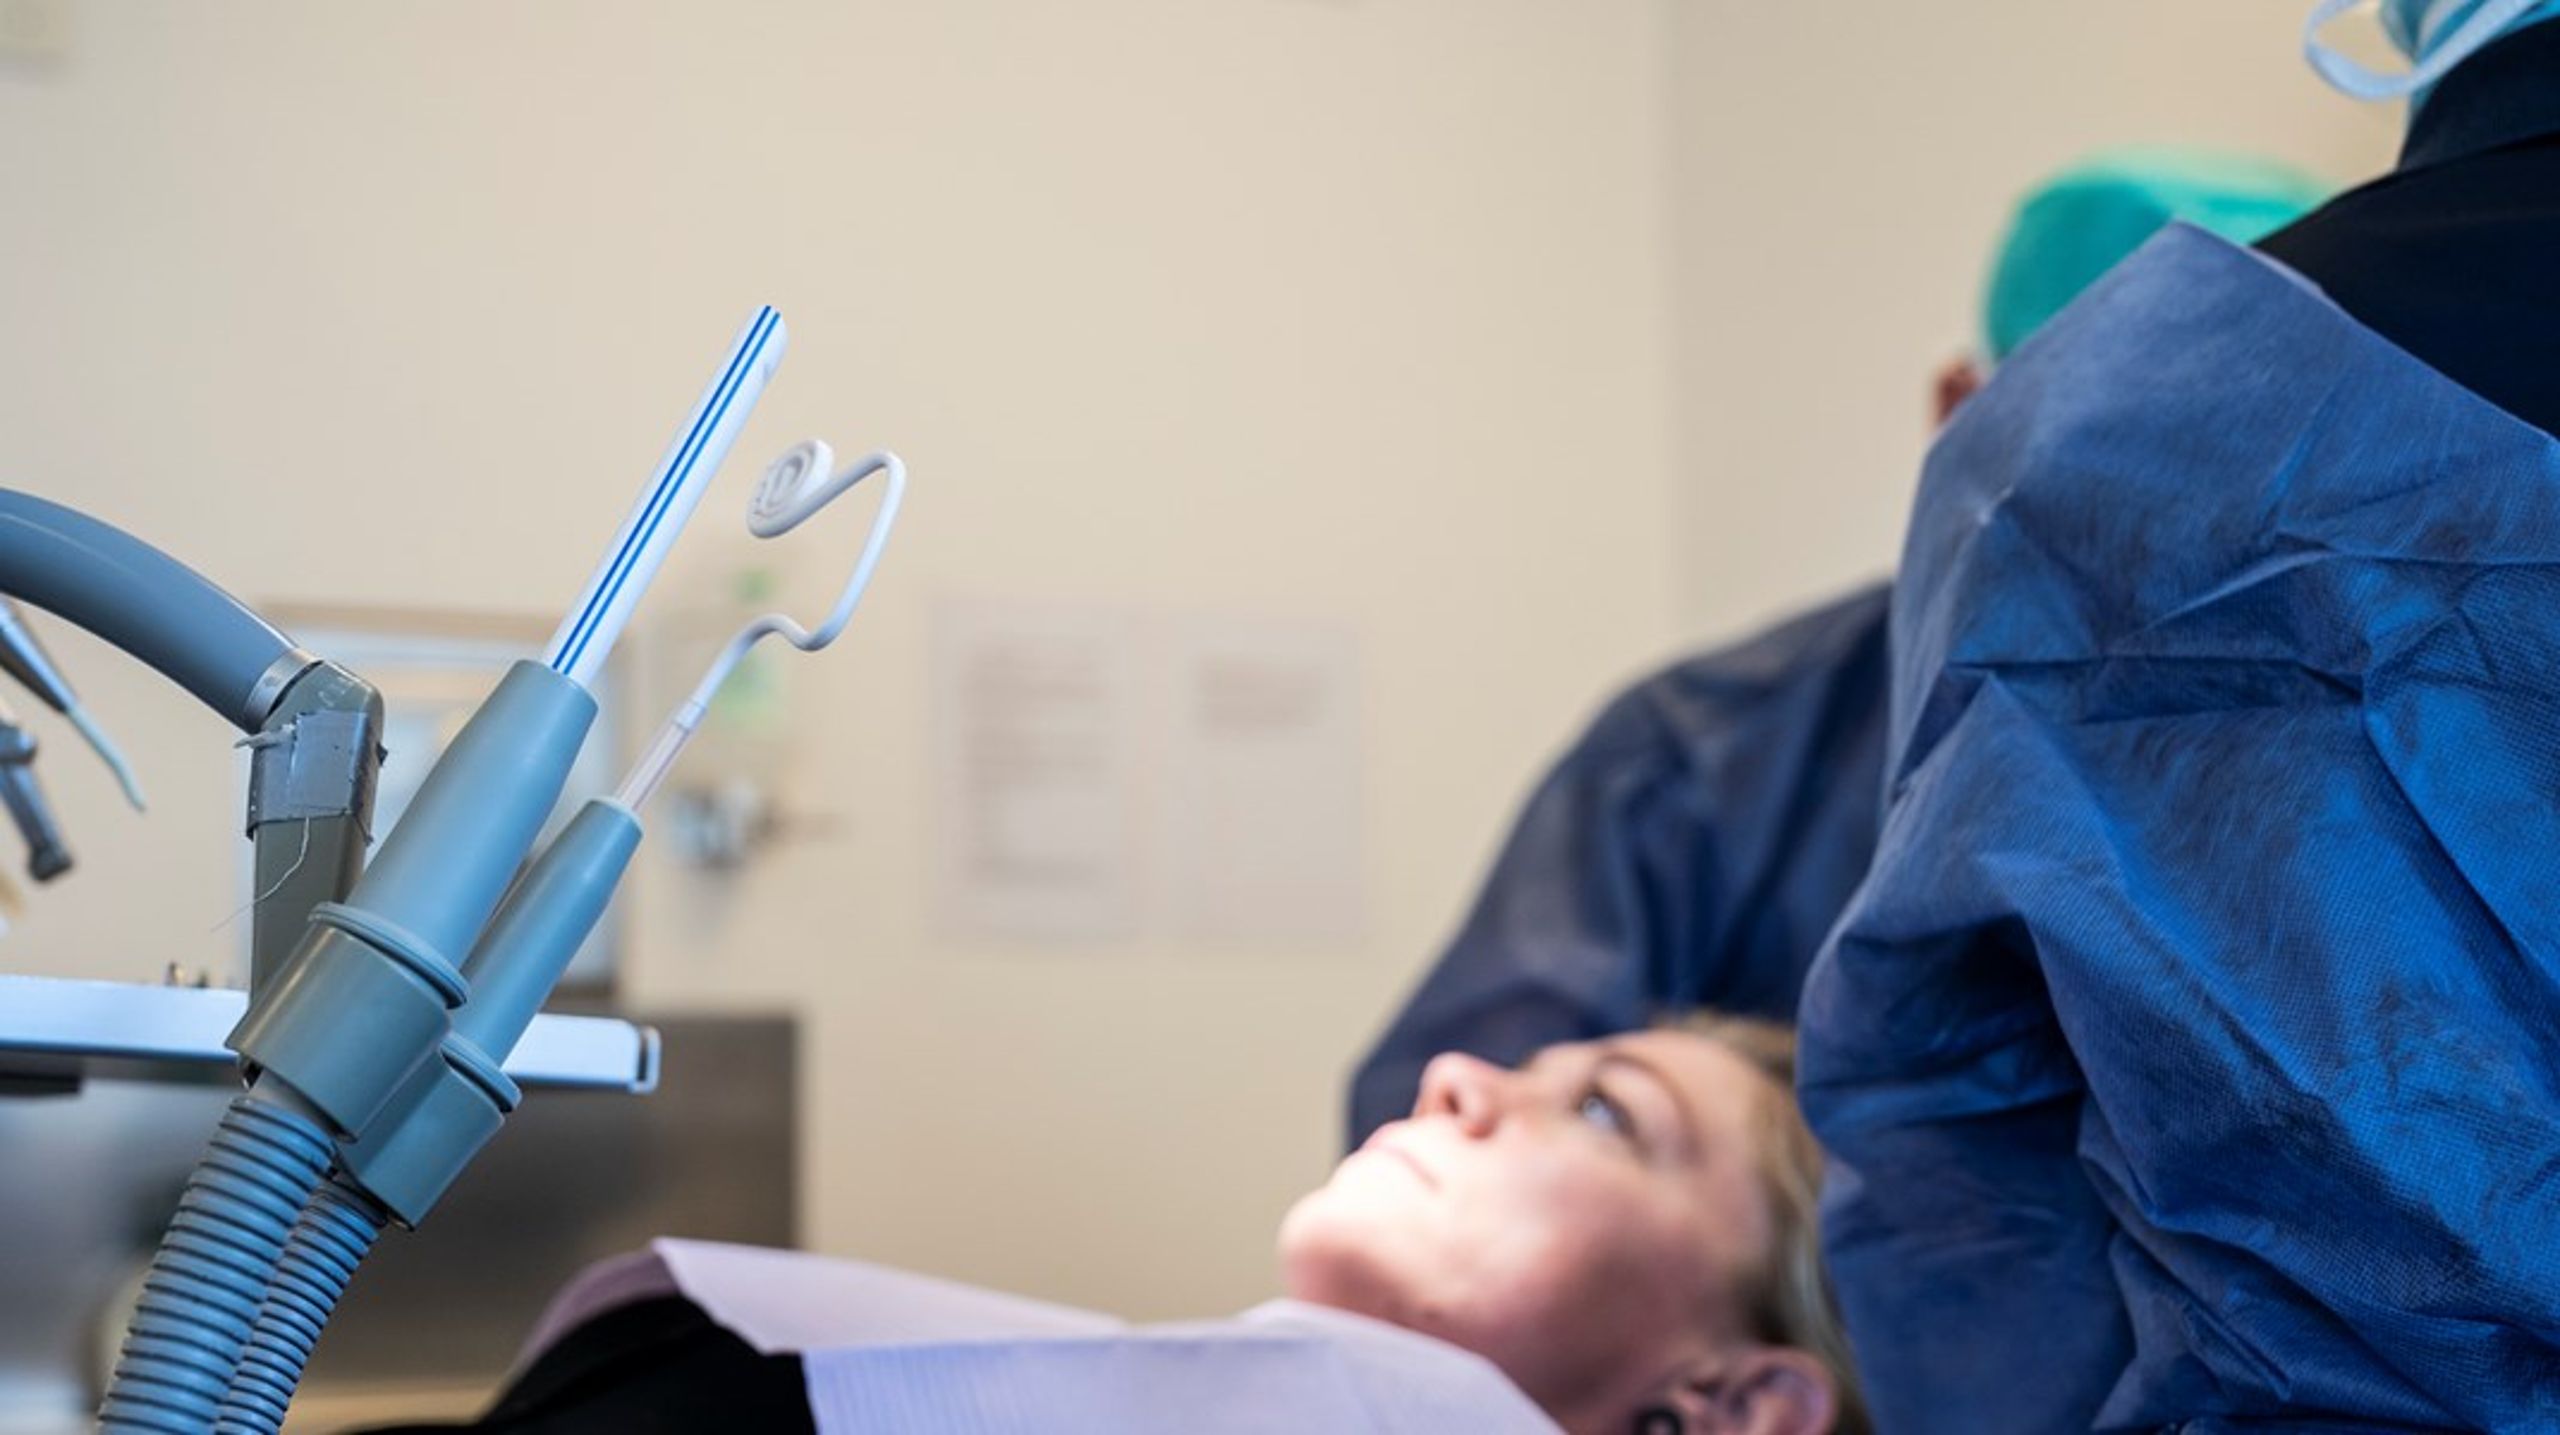 Tandklinikkerne skal forpligte sig til at tilbyde praktikforløb, så mange studerende under uddannelsesforløbet får konkret, klinisk erfaring, skriver Jens Mondrup.&nbsp;